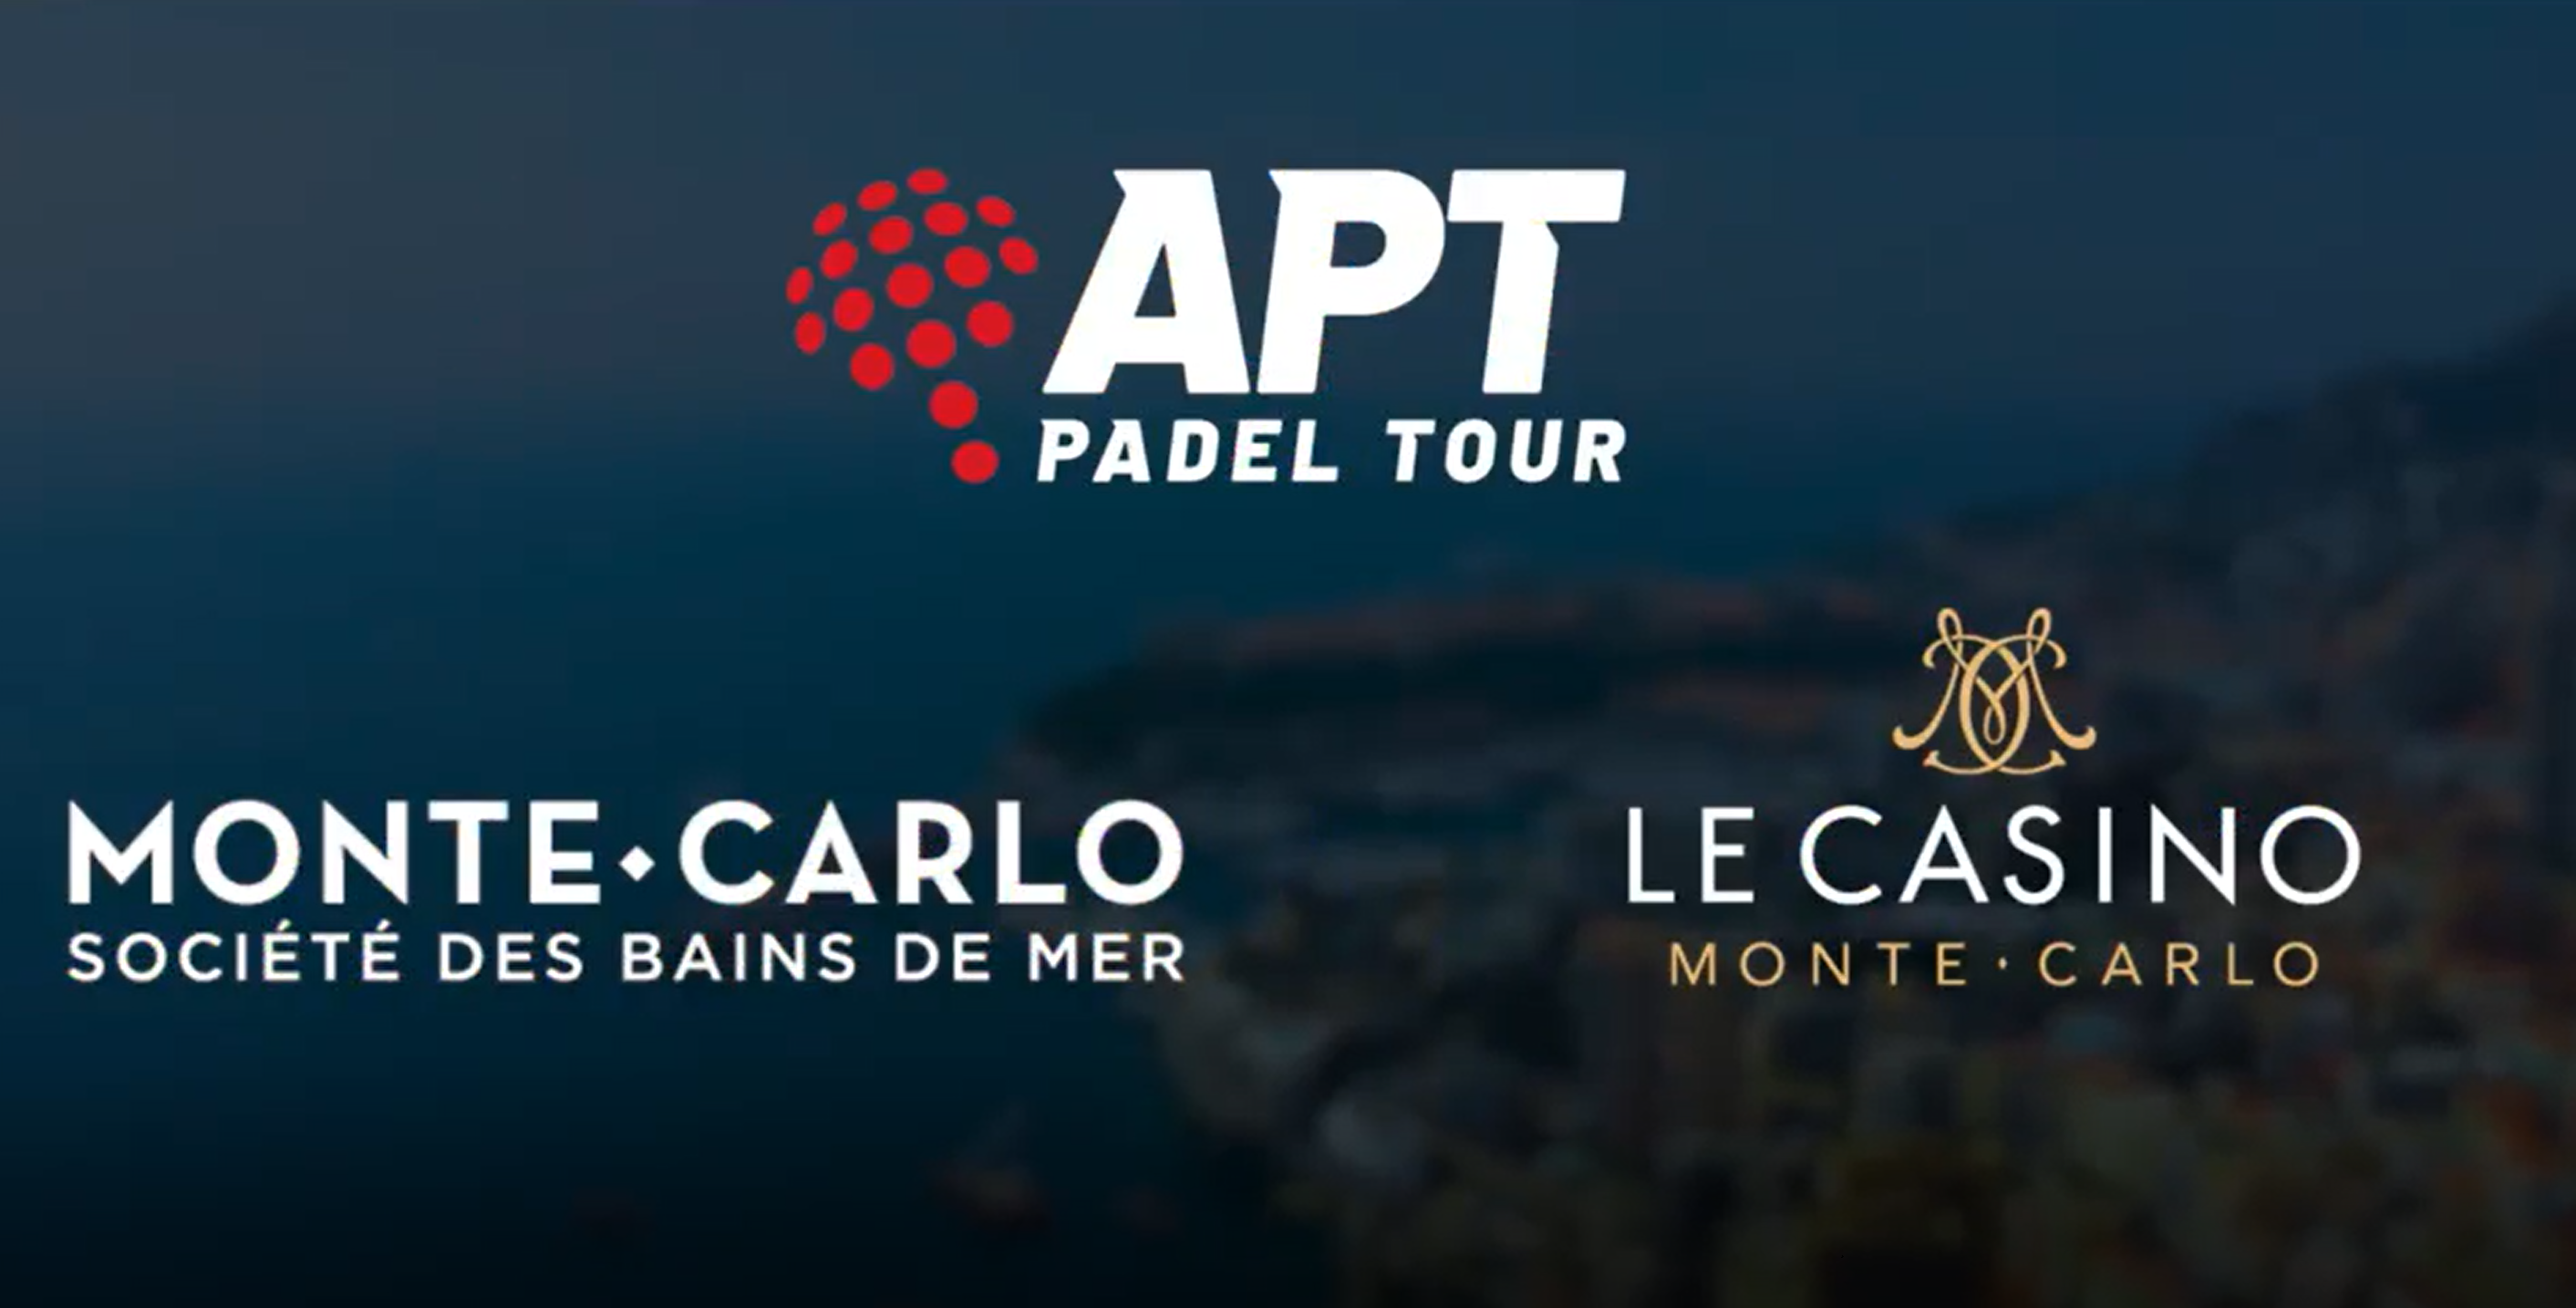 APT Padel Tour Monaco: farà caldo!